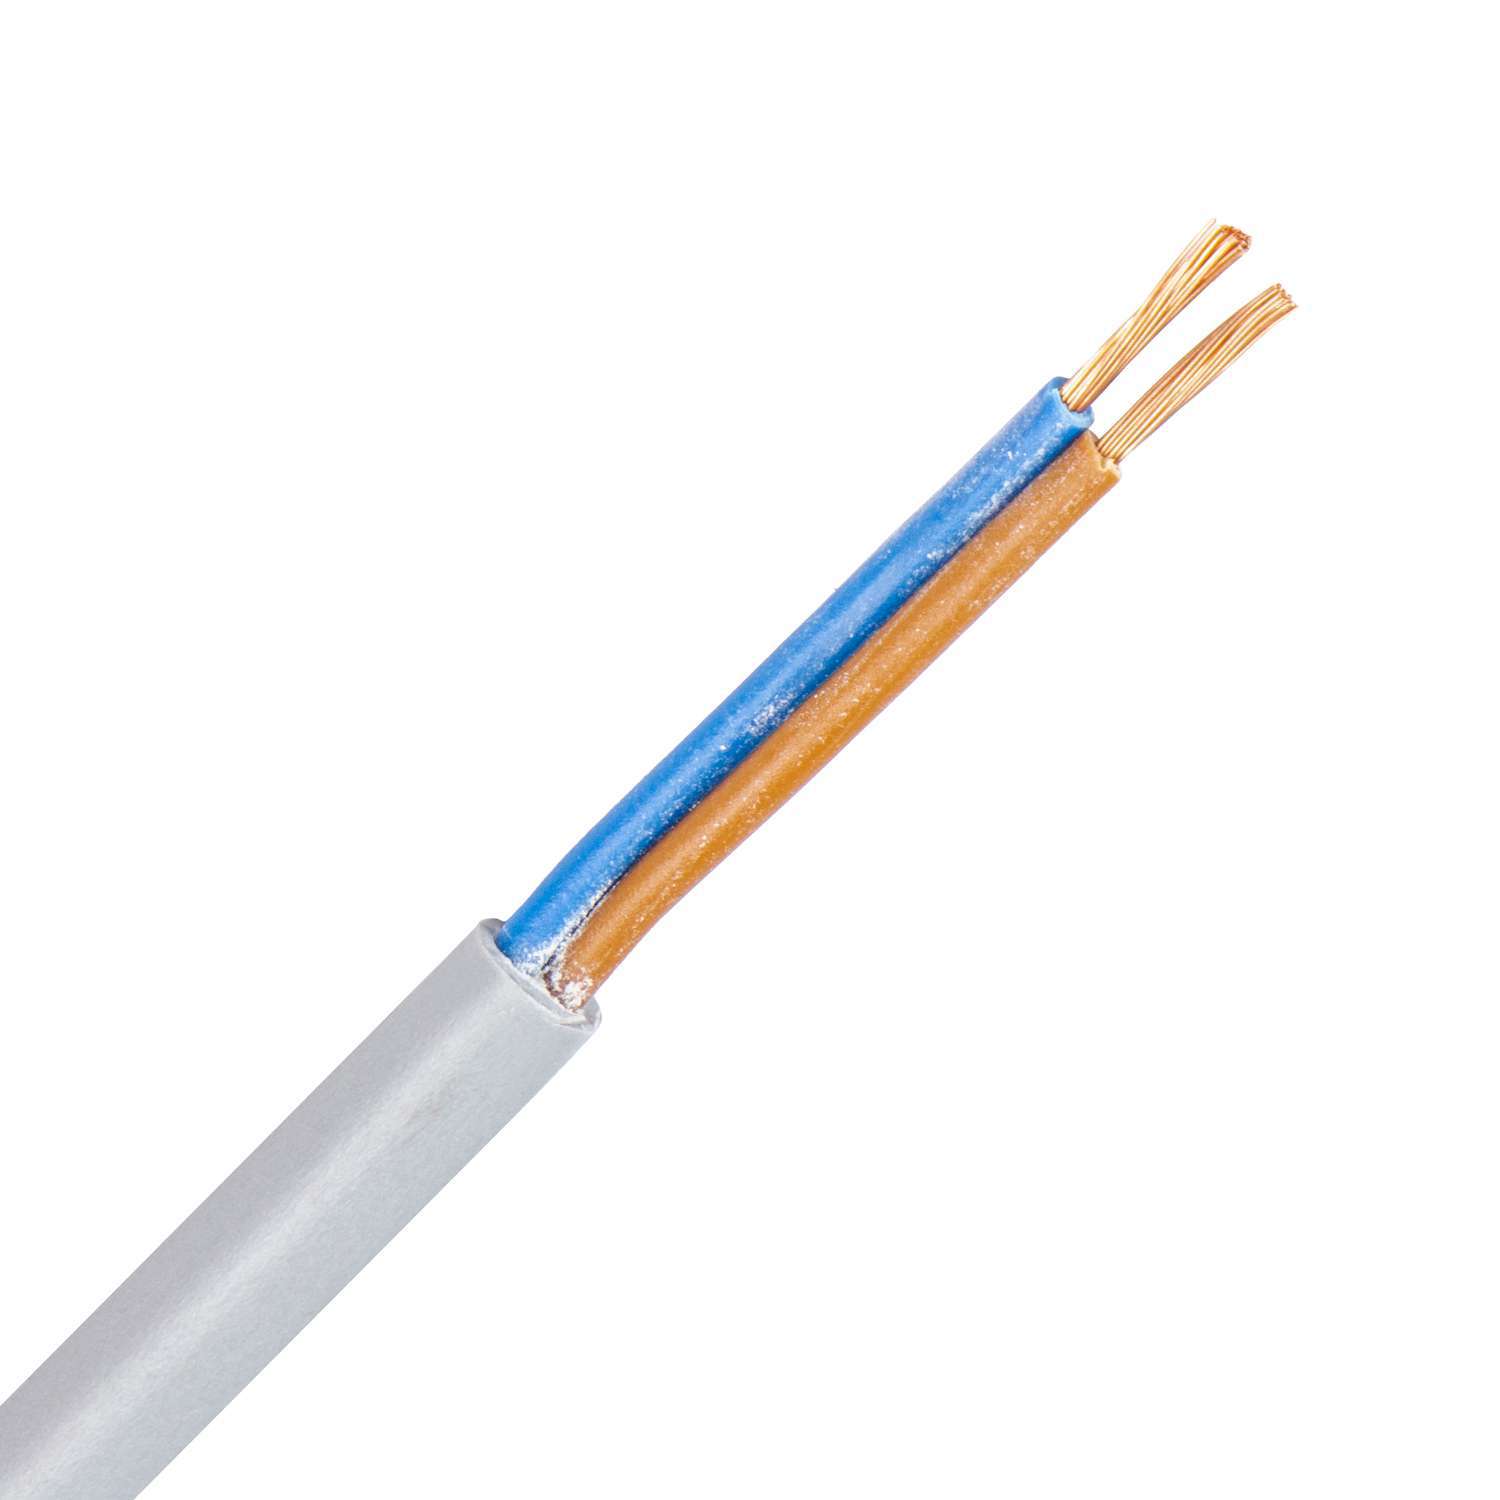 FLEX-OB kabel 2X1,0 mm2 grijs (Eca) (Ring 100 mtr) - Kabelpro